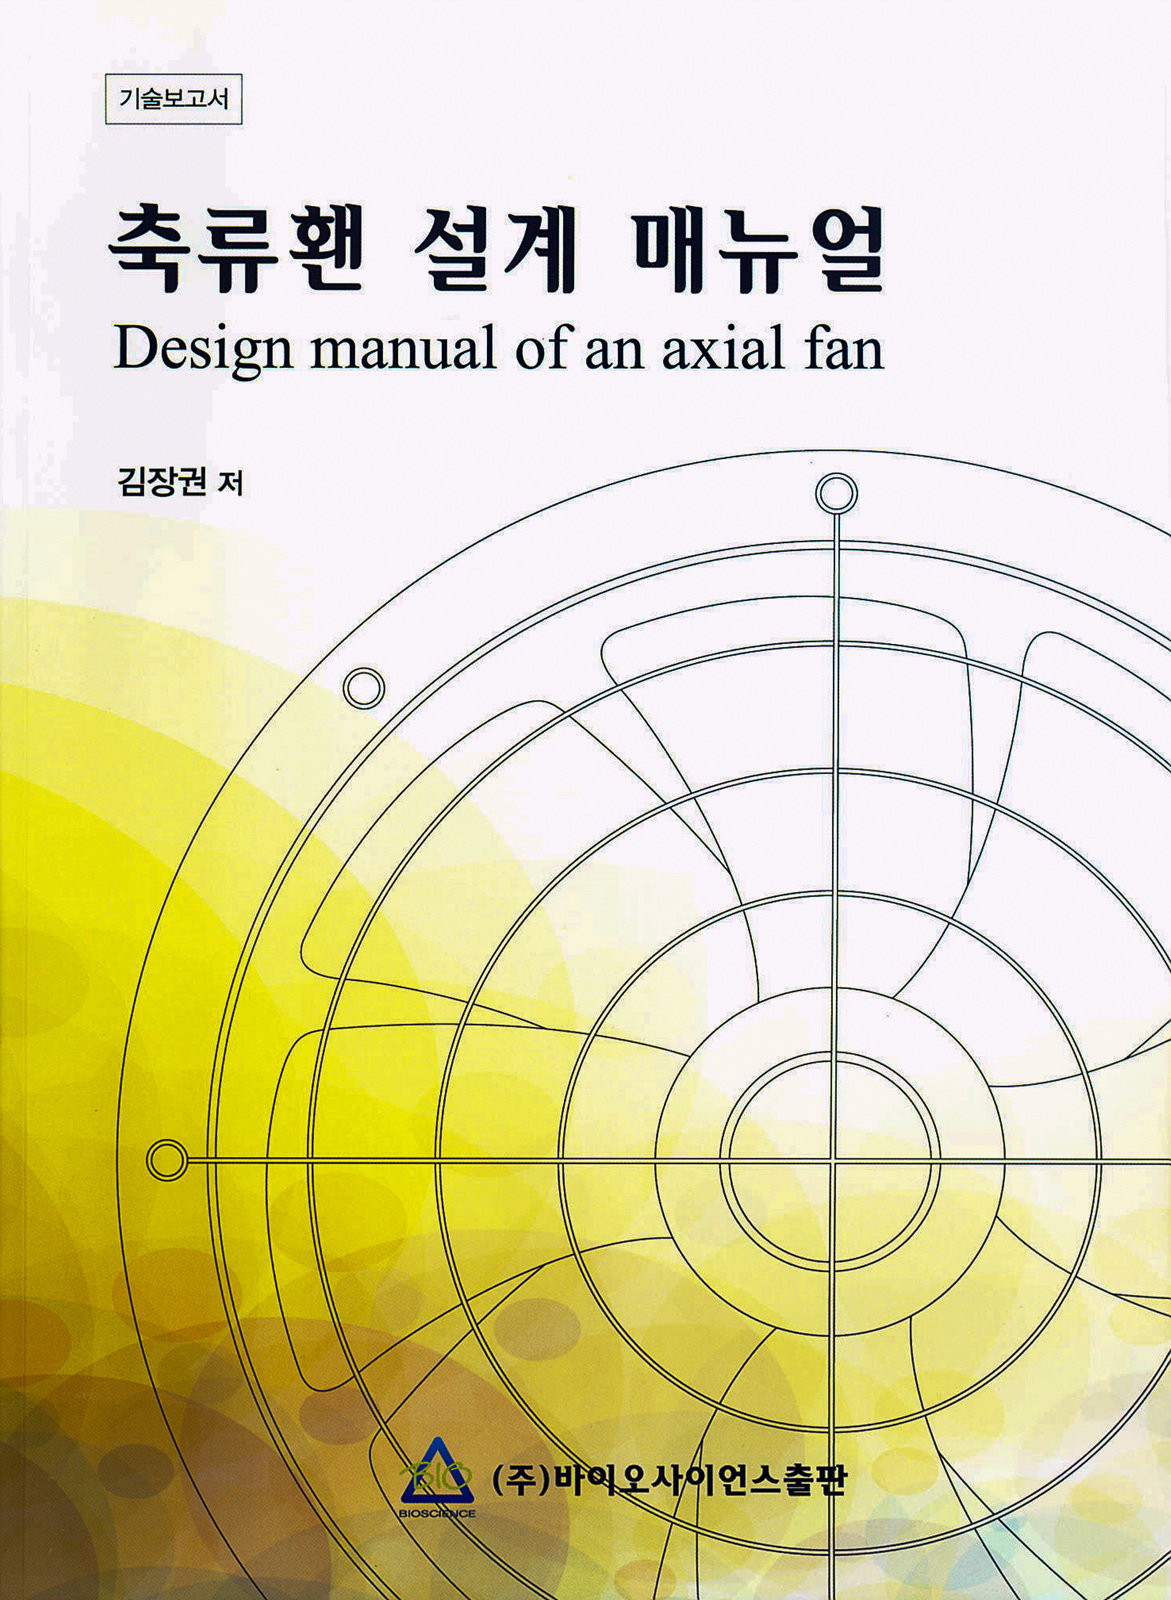 2011년 축류홴 설계 매뉴얼(기술보고서)-김장권